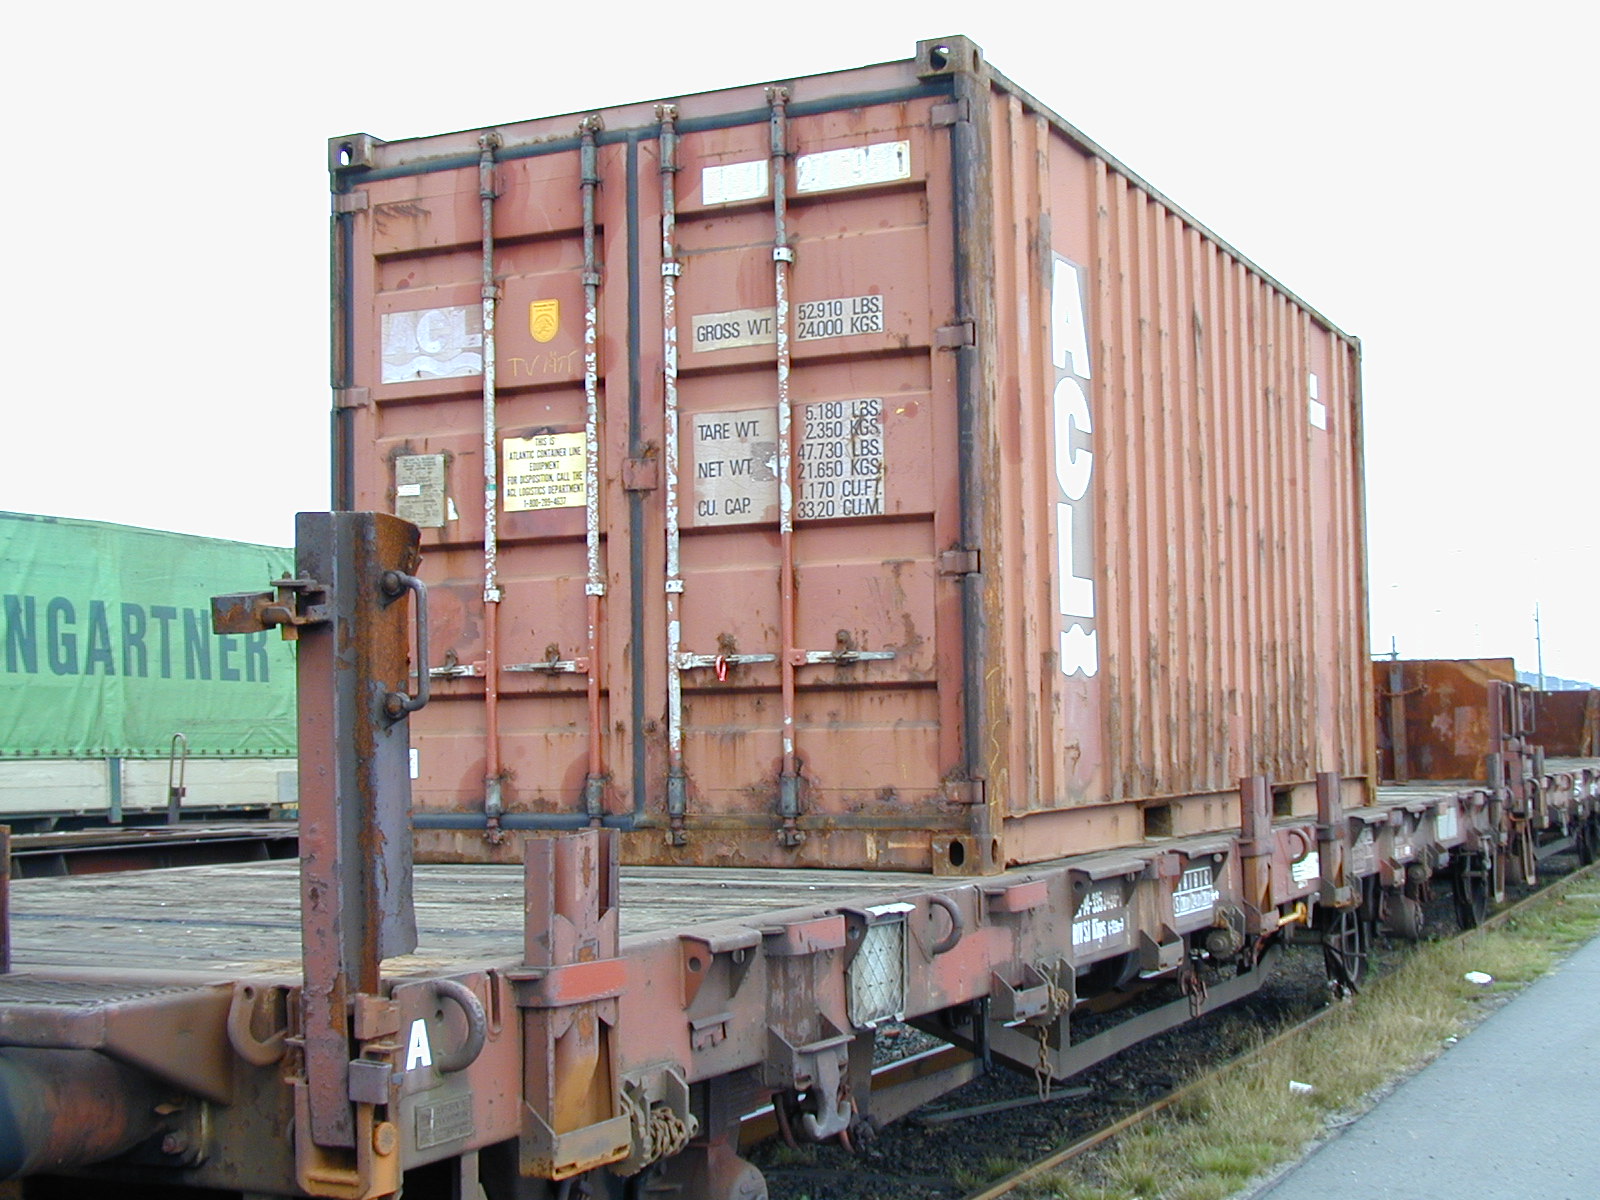 Kbps 741 med 20-fots container från ACL